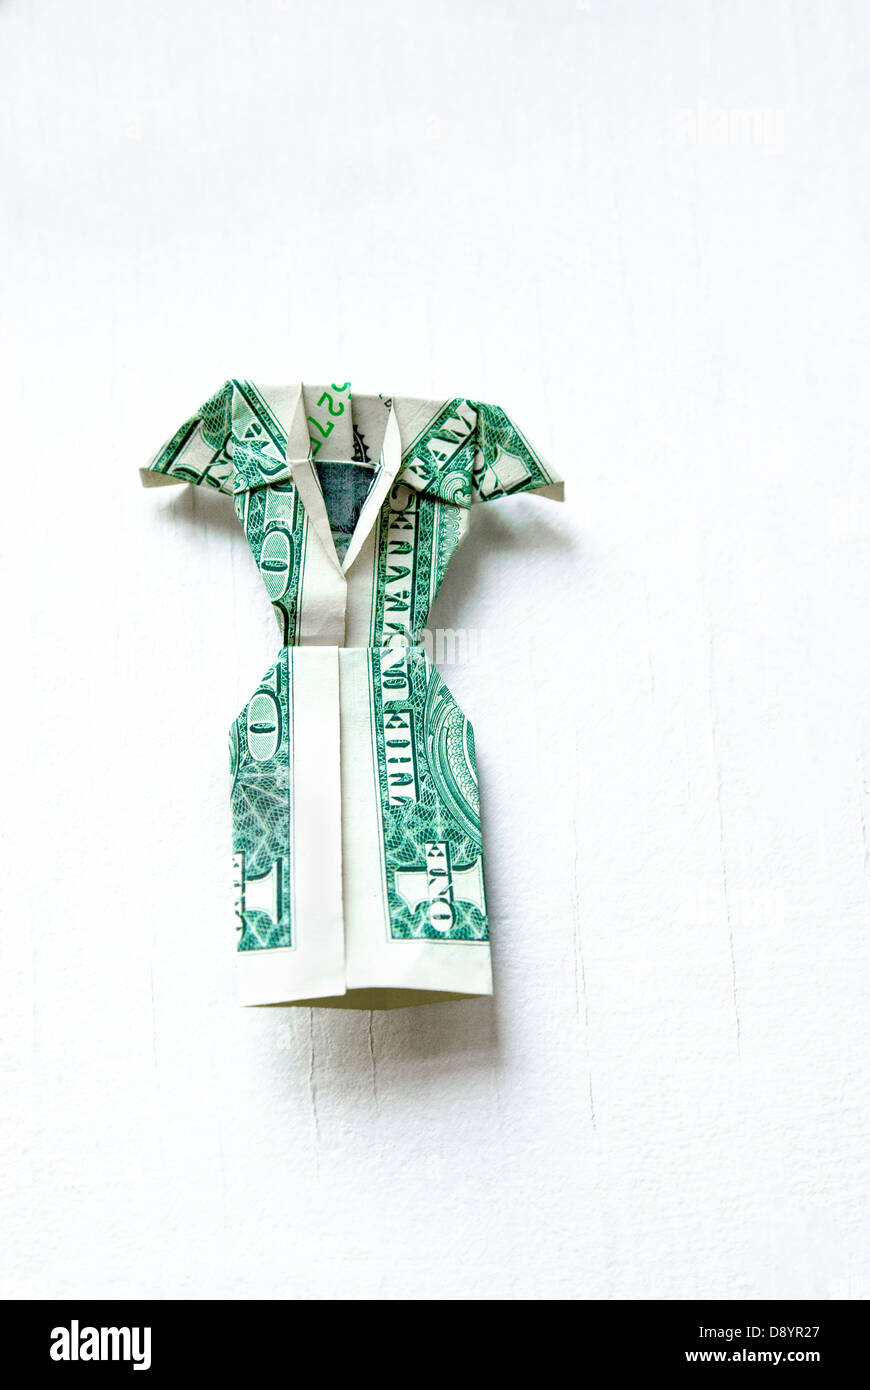 Origami One Dollar Bill Dress Stock Photo 57159151 Alamy